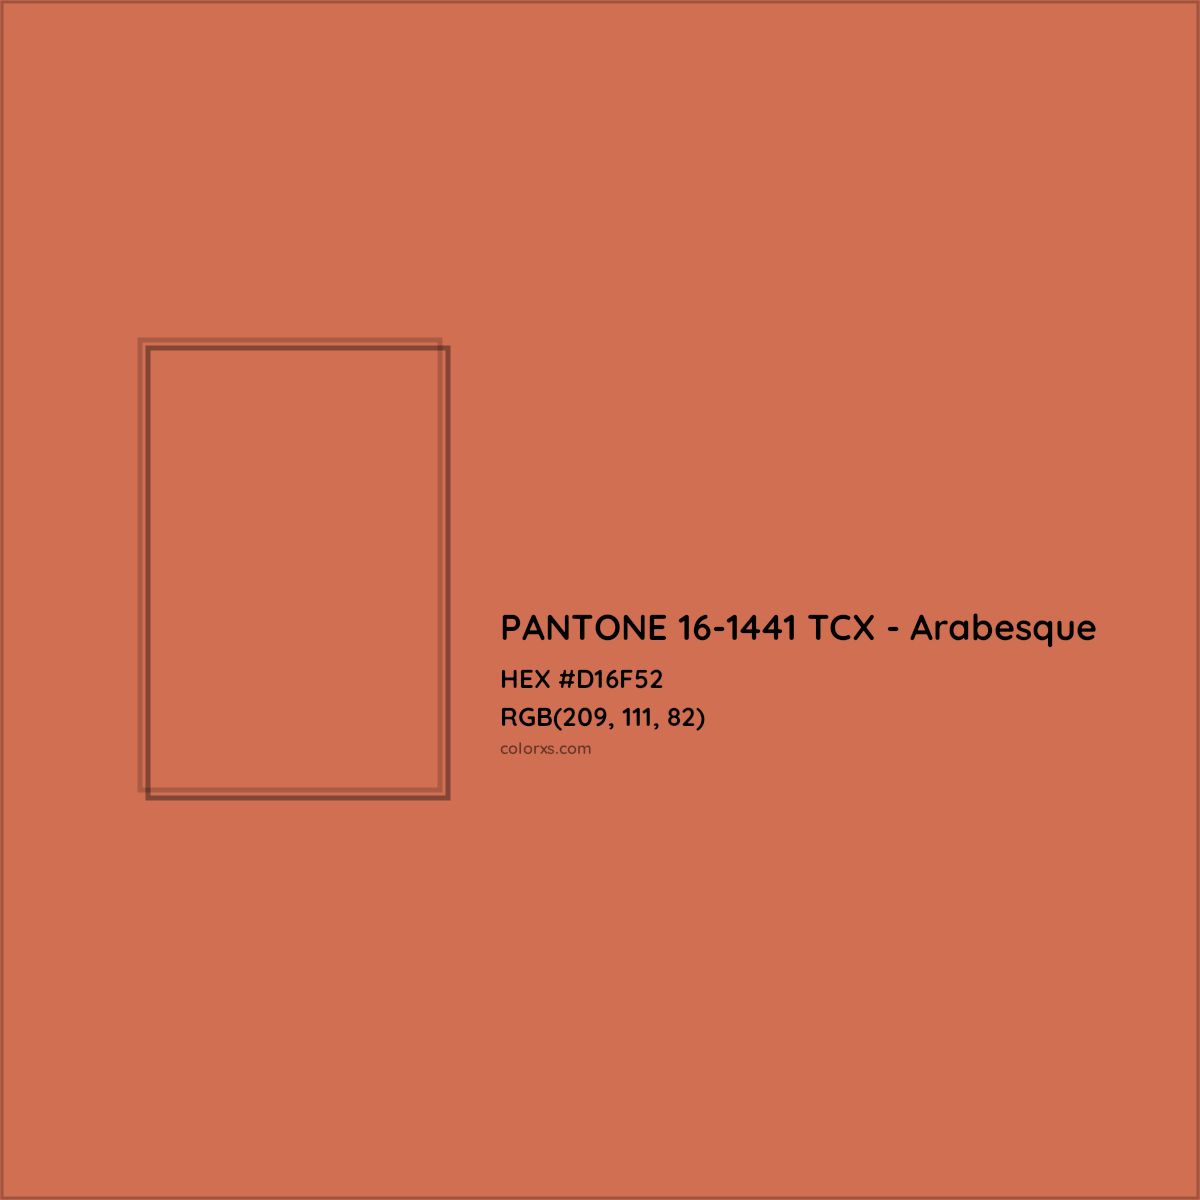 HEX #D16F52 PANTONE 16-1441 TCX - Arabesque CMS Pantone TCX - Color Code